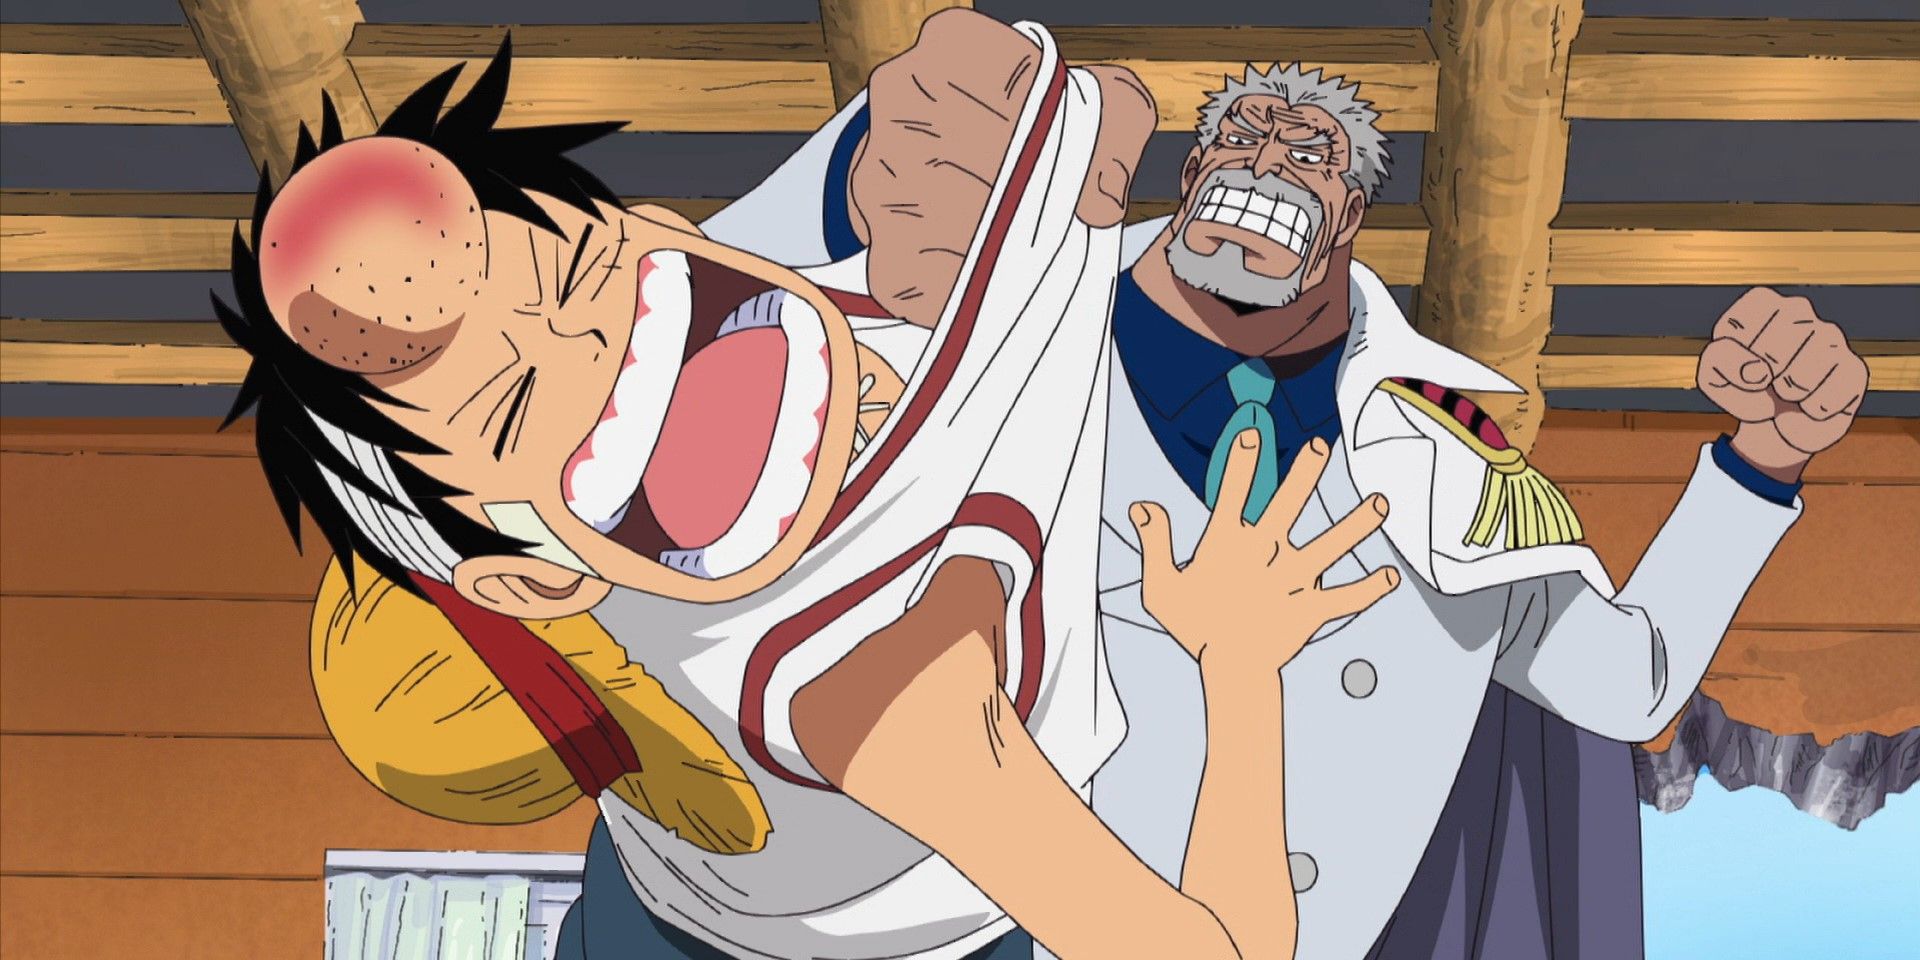 Garp atinge Luffy durante Water 7 in One Piece.